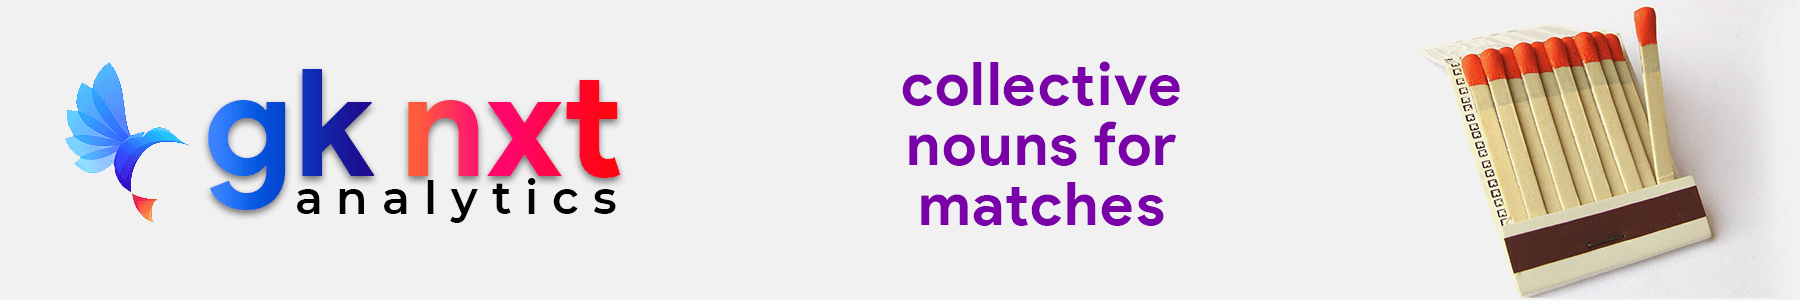 collective noun for matches